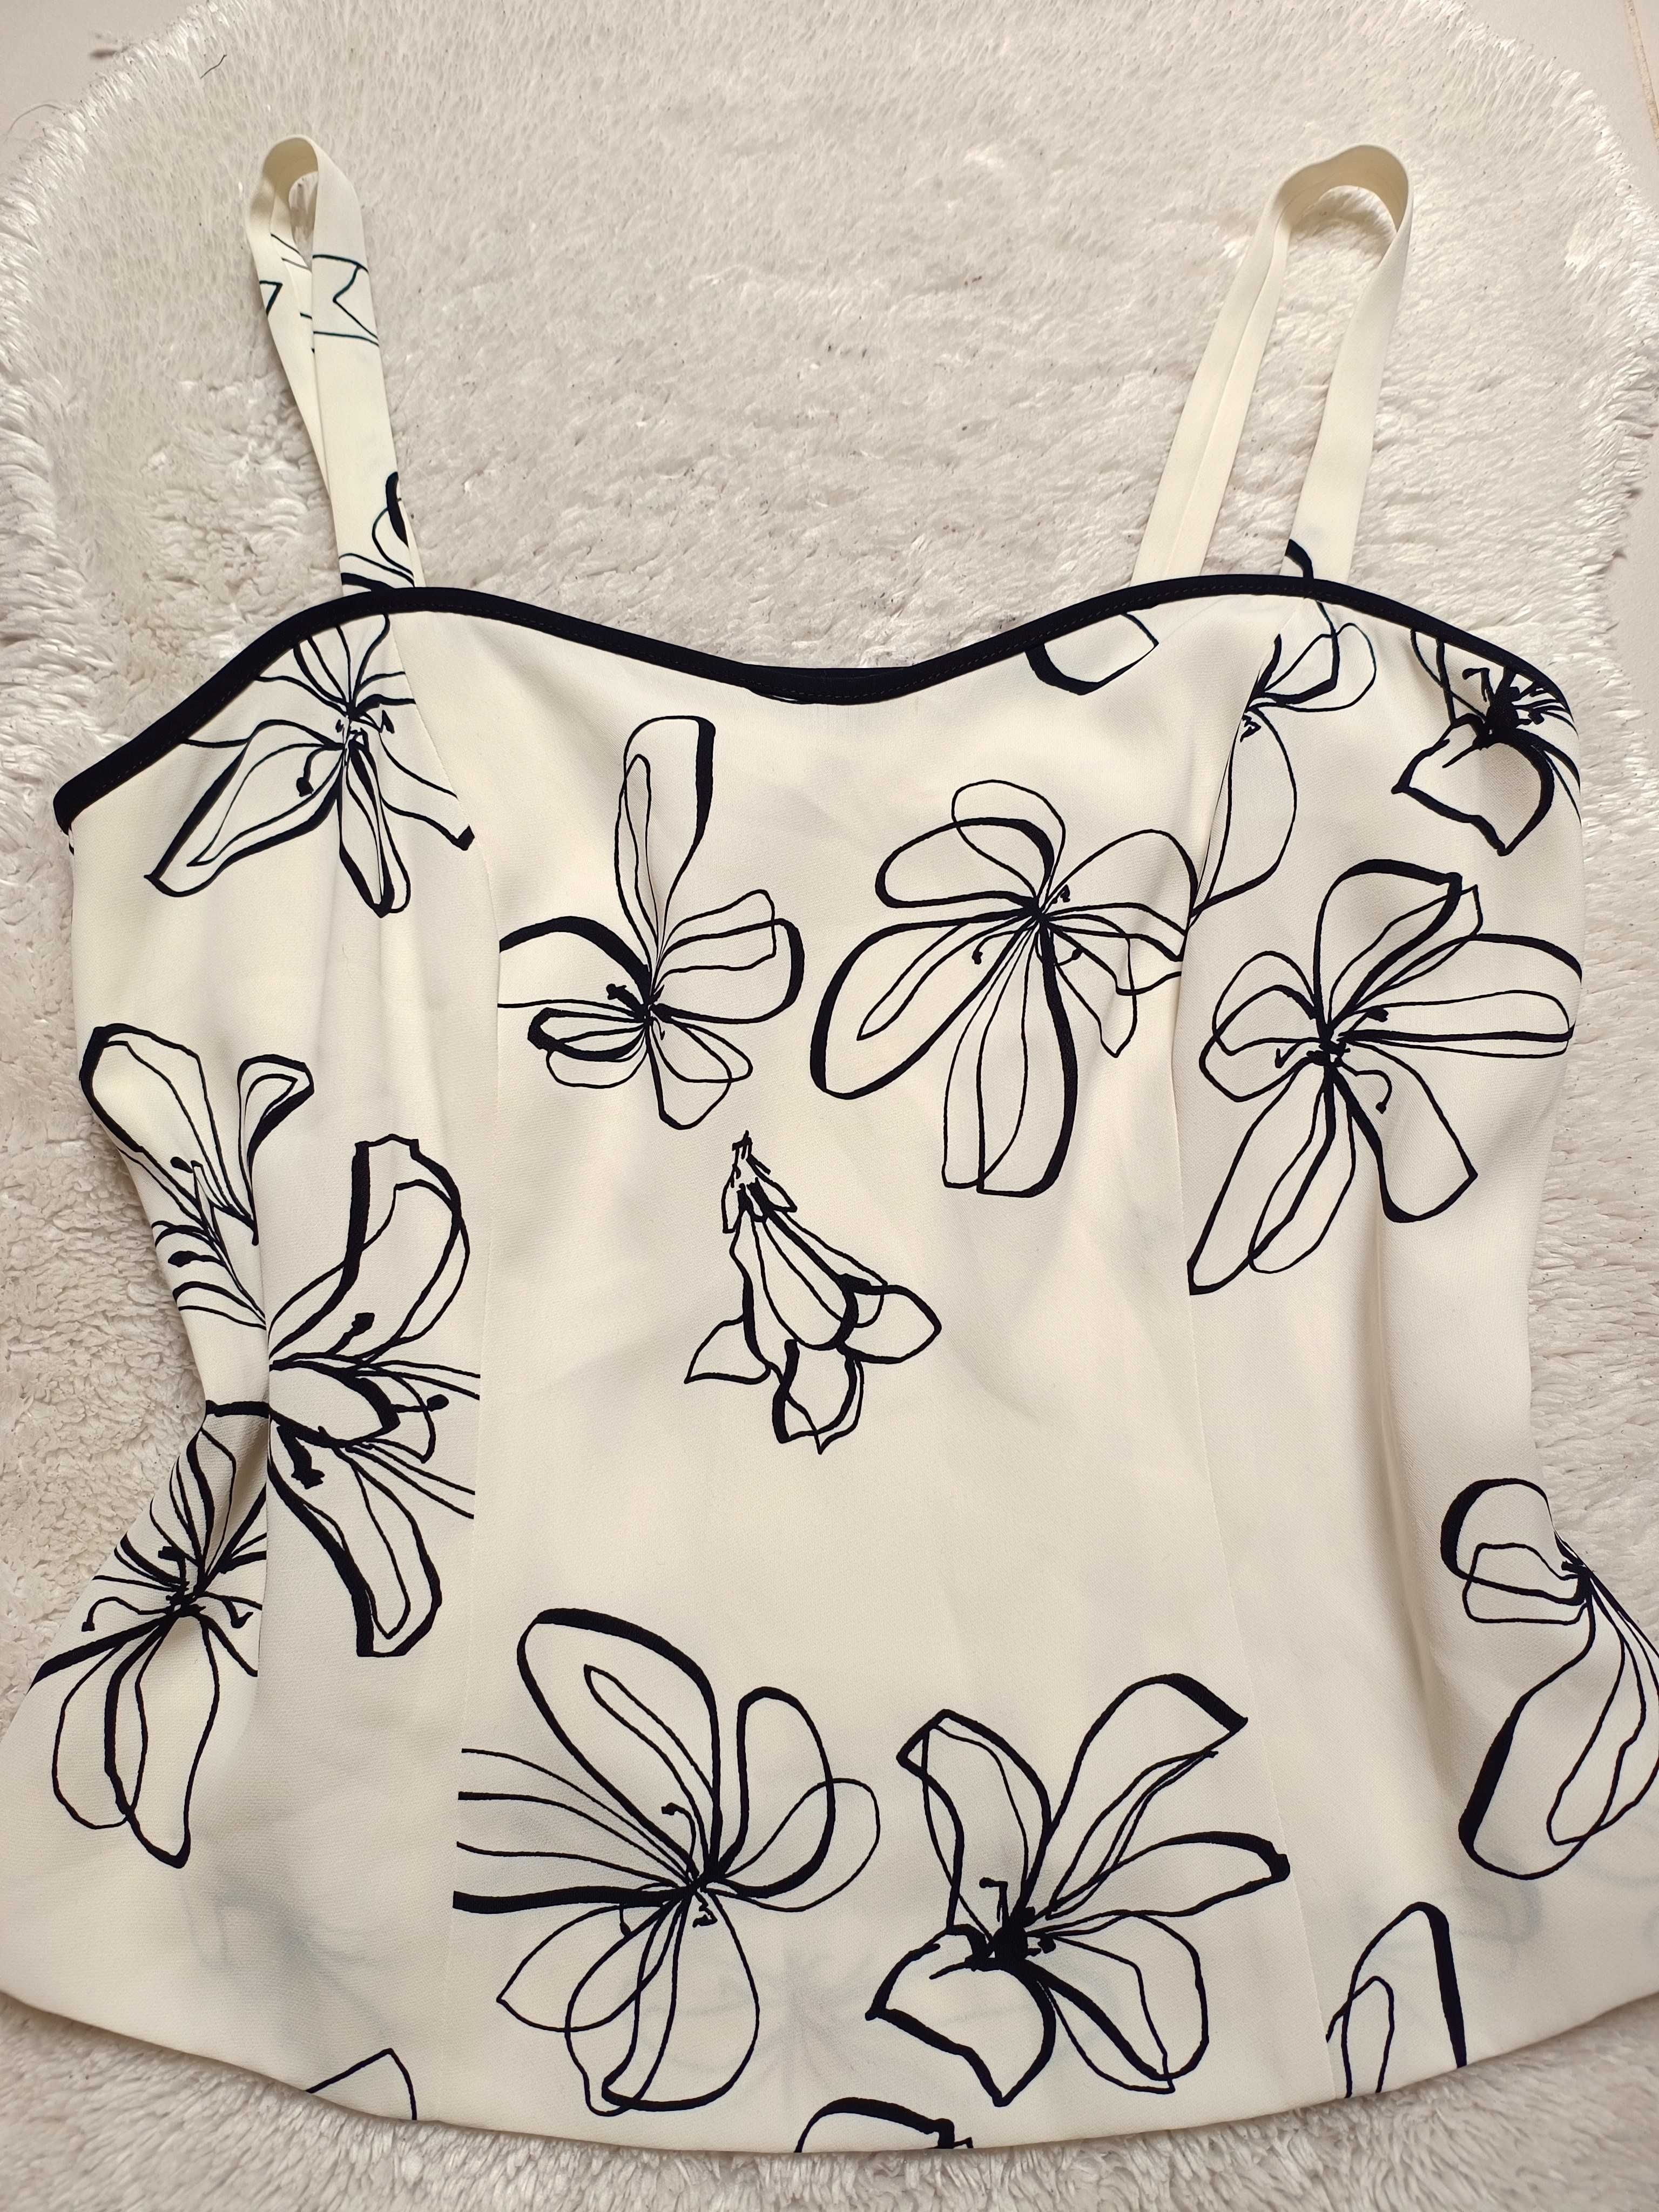 Cudo bluzka top na ramiączkach M/L/XL kremowa kwiaty zamek na plecach